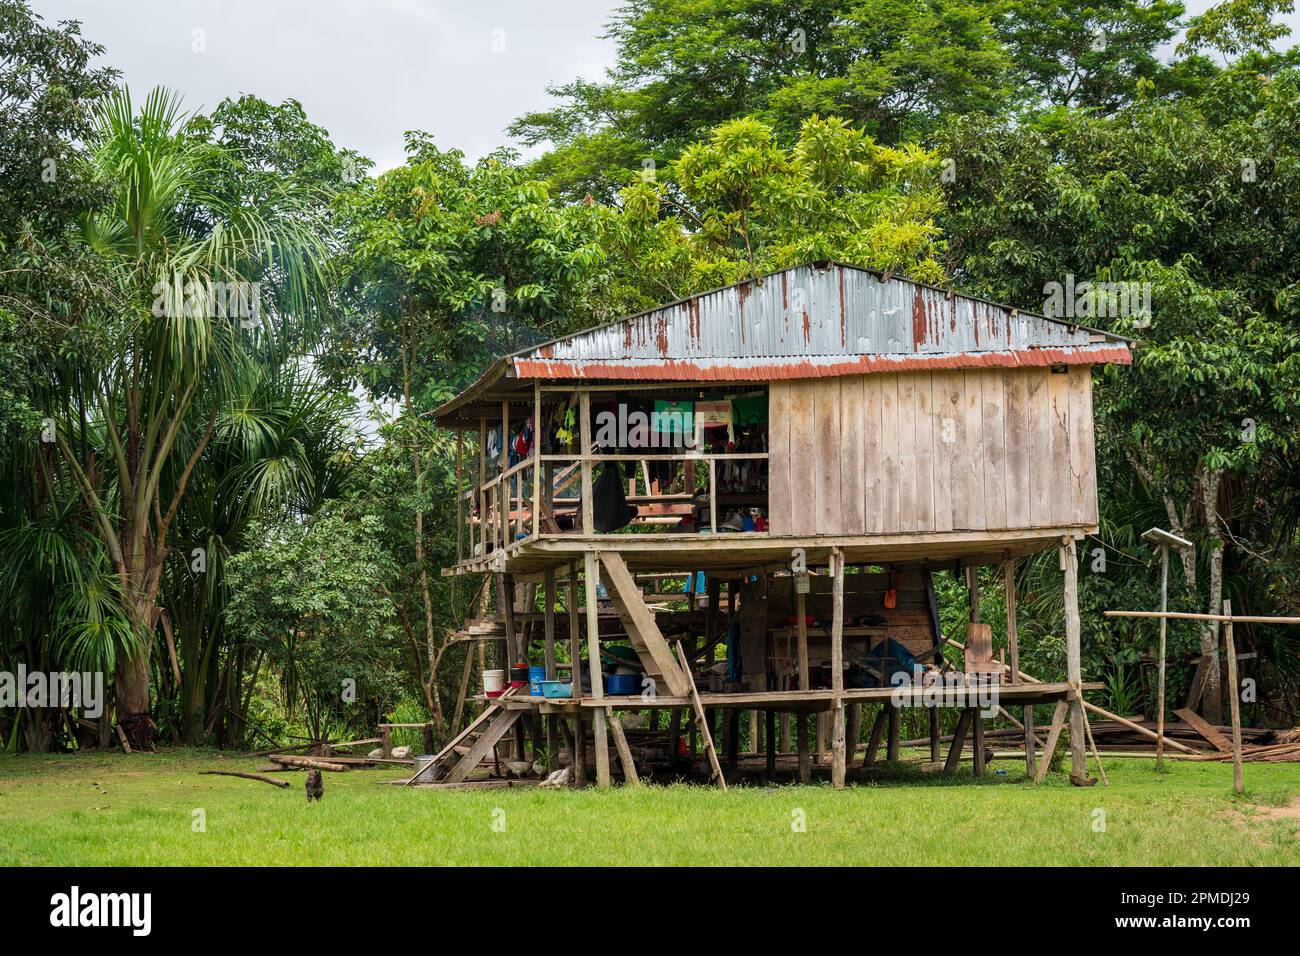 Les communautés et les maisons de Riberenos ponctuent l'Amazonie péruvienne Banque D'Images